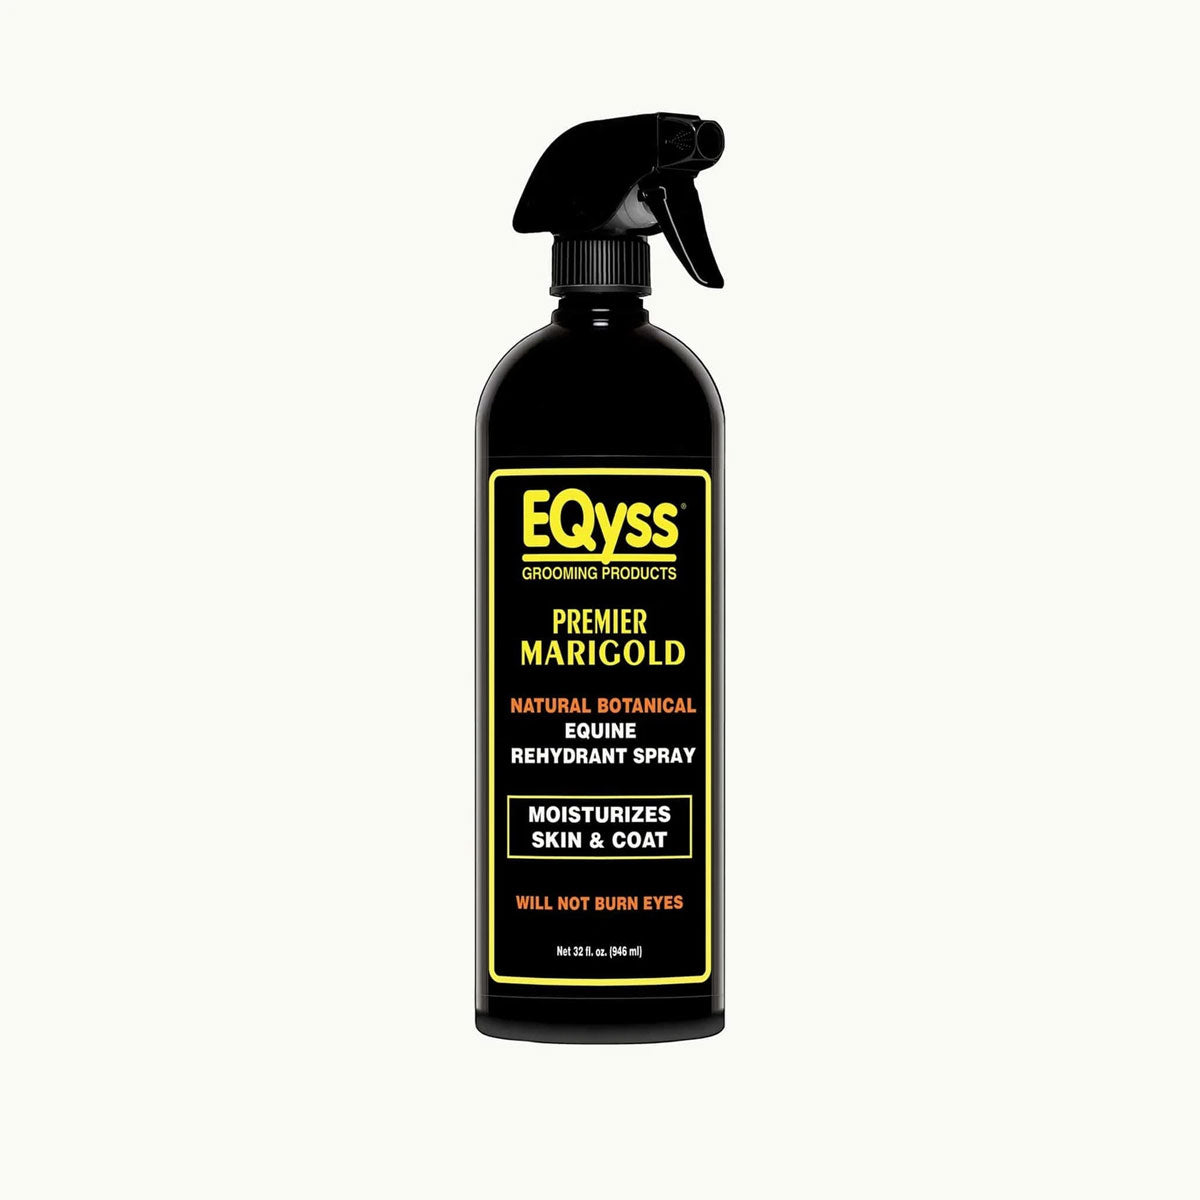 Eqyss Premier Marigold Rehydrant Spray 32 oz